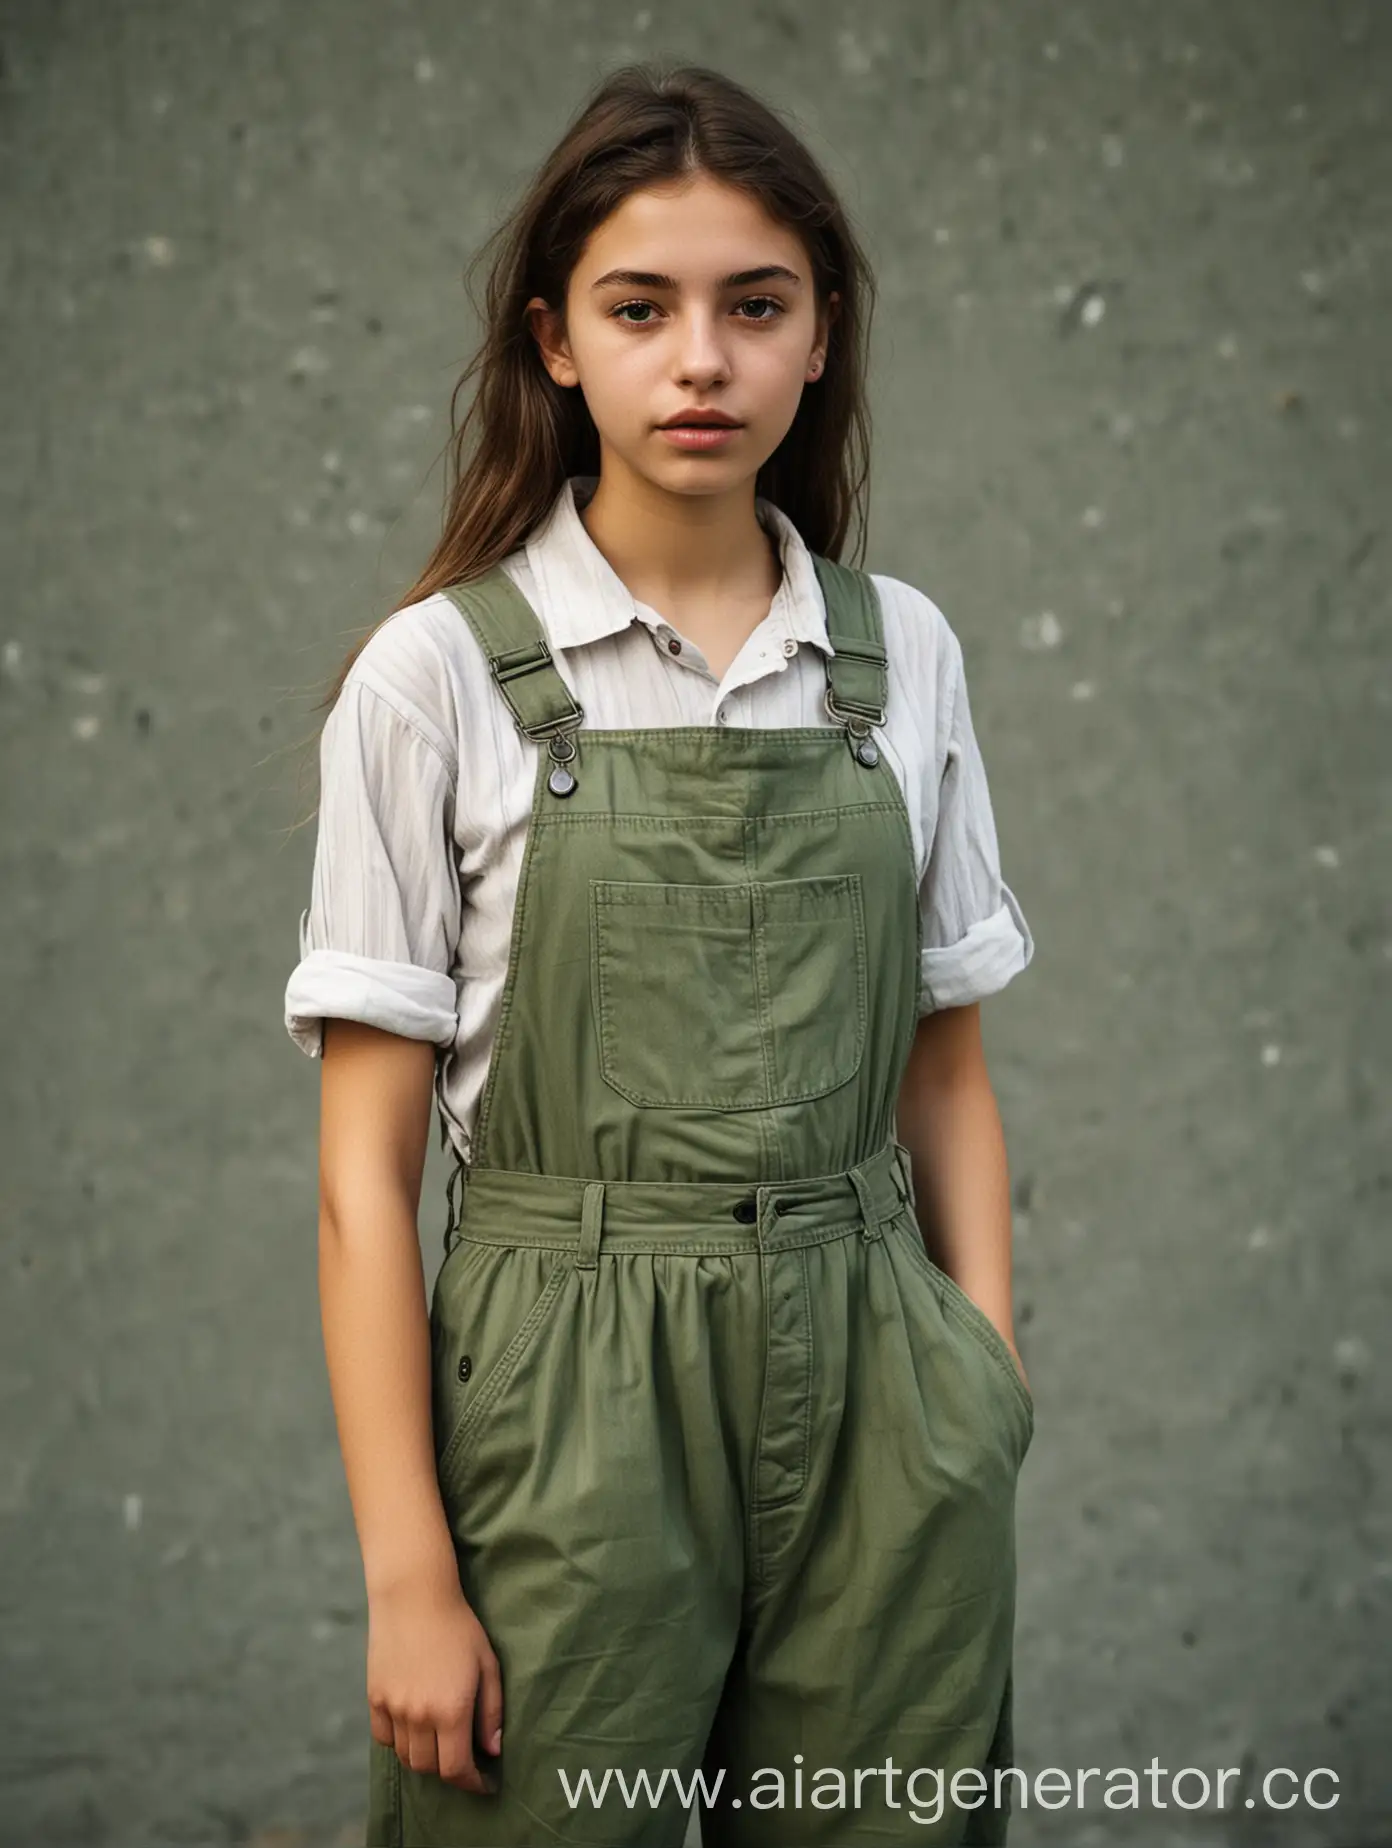 Молодая девушка, 21 год, эко-активистка с хорошим стилем в одежде